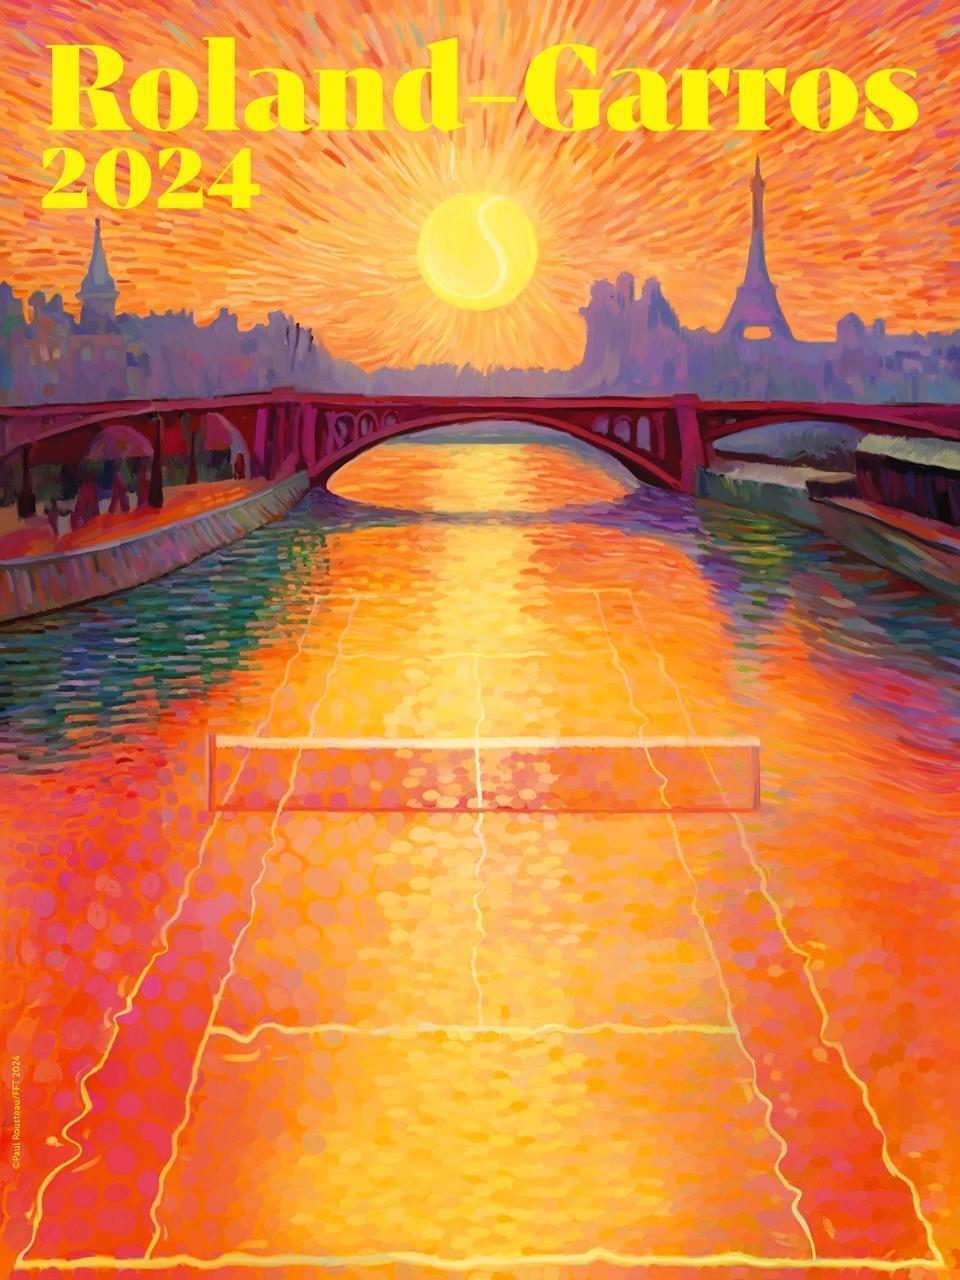 Roland-Garros. L’affiche de l’édition 2024 dévoilée, avec un clin d’œil